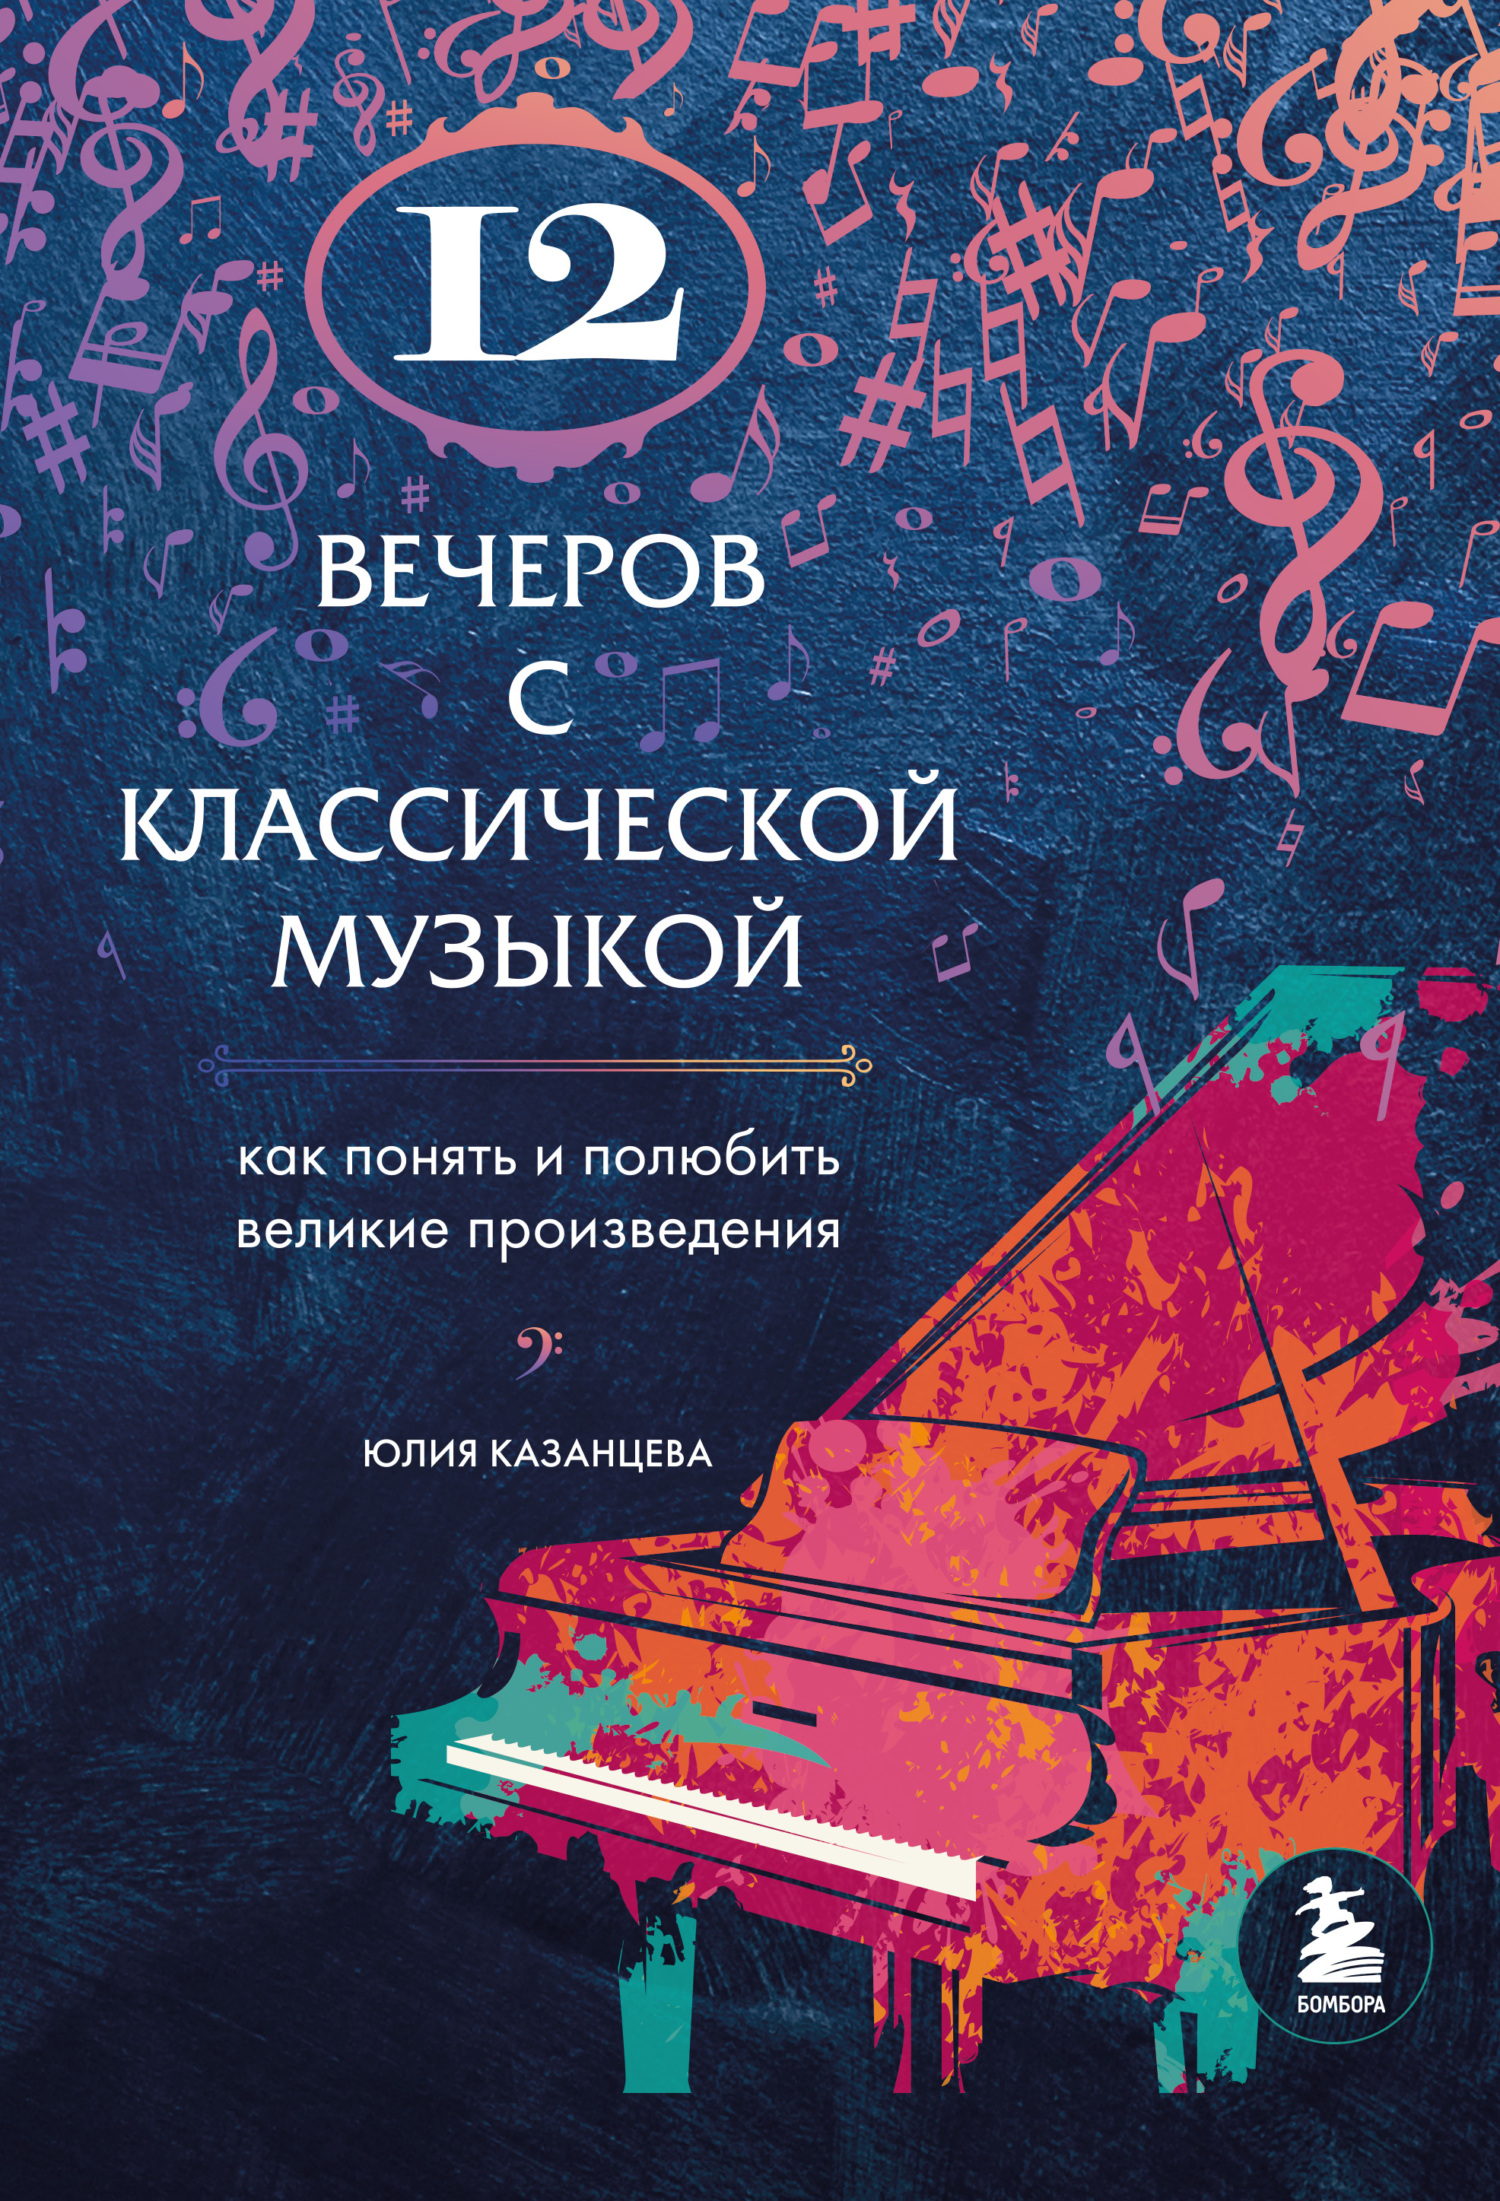 12 вечеров с классической музыкой. Как понять и полюбить великие произведения - Юлия Александровна Казанцева